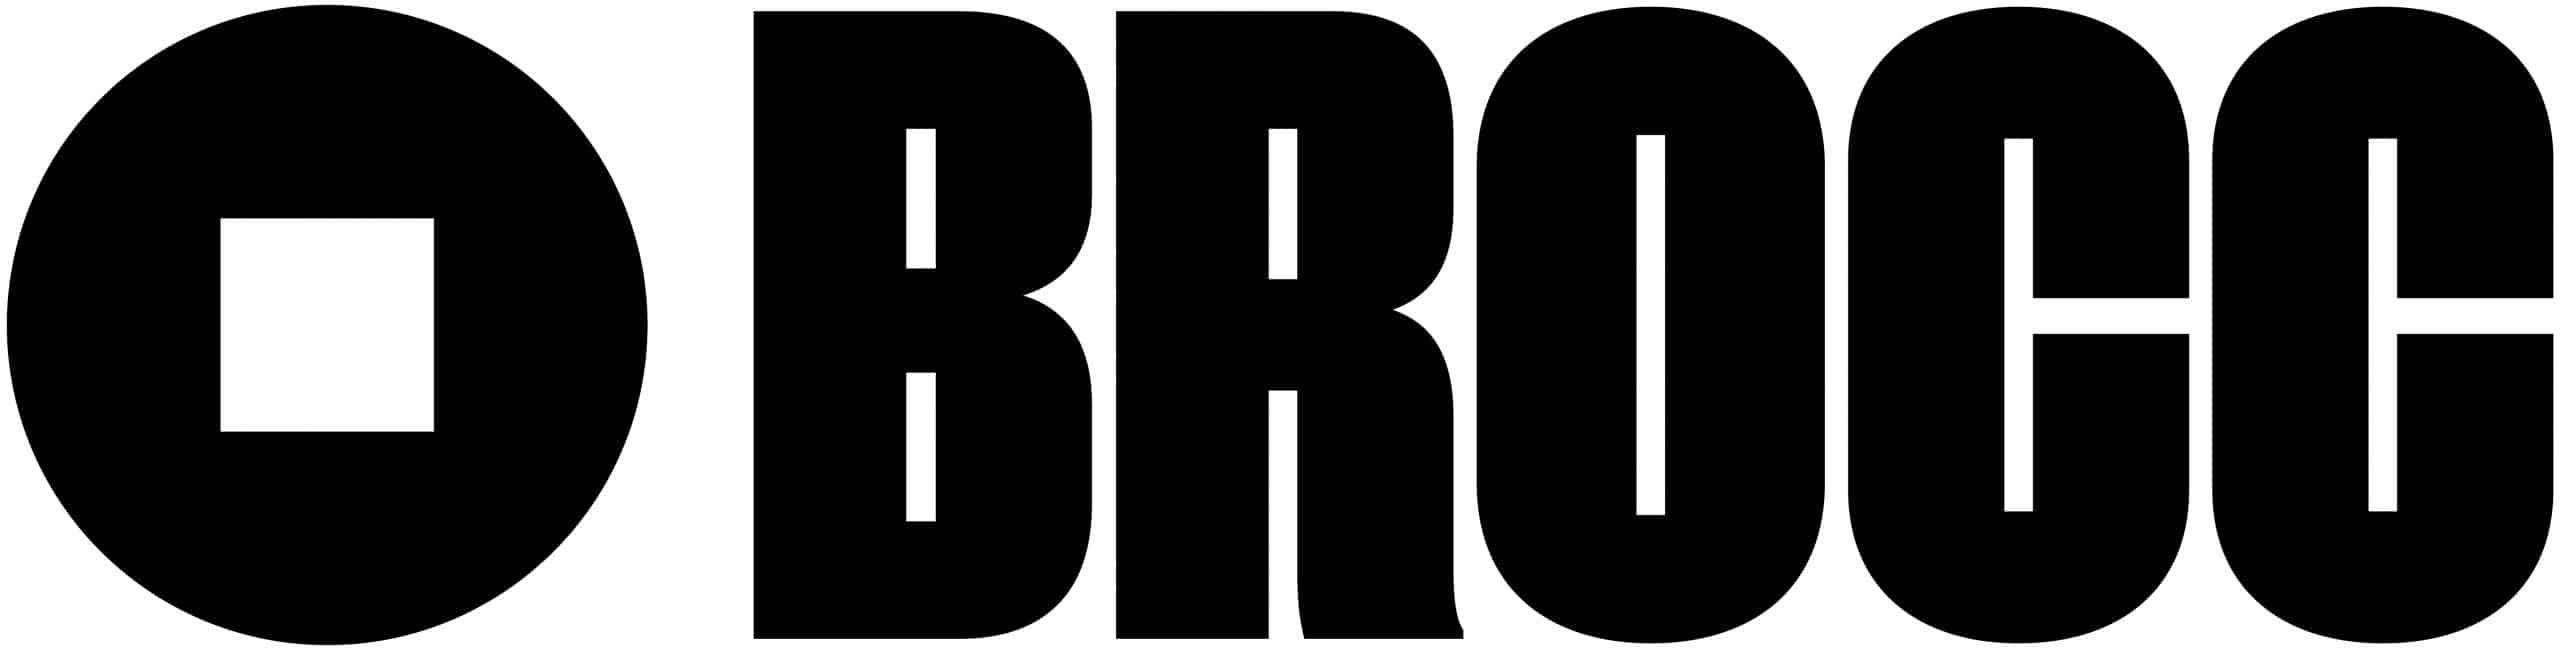 brocc logo sparlån